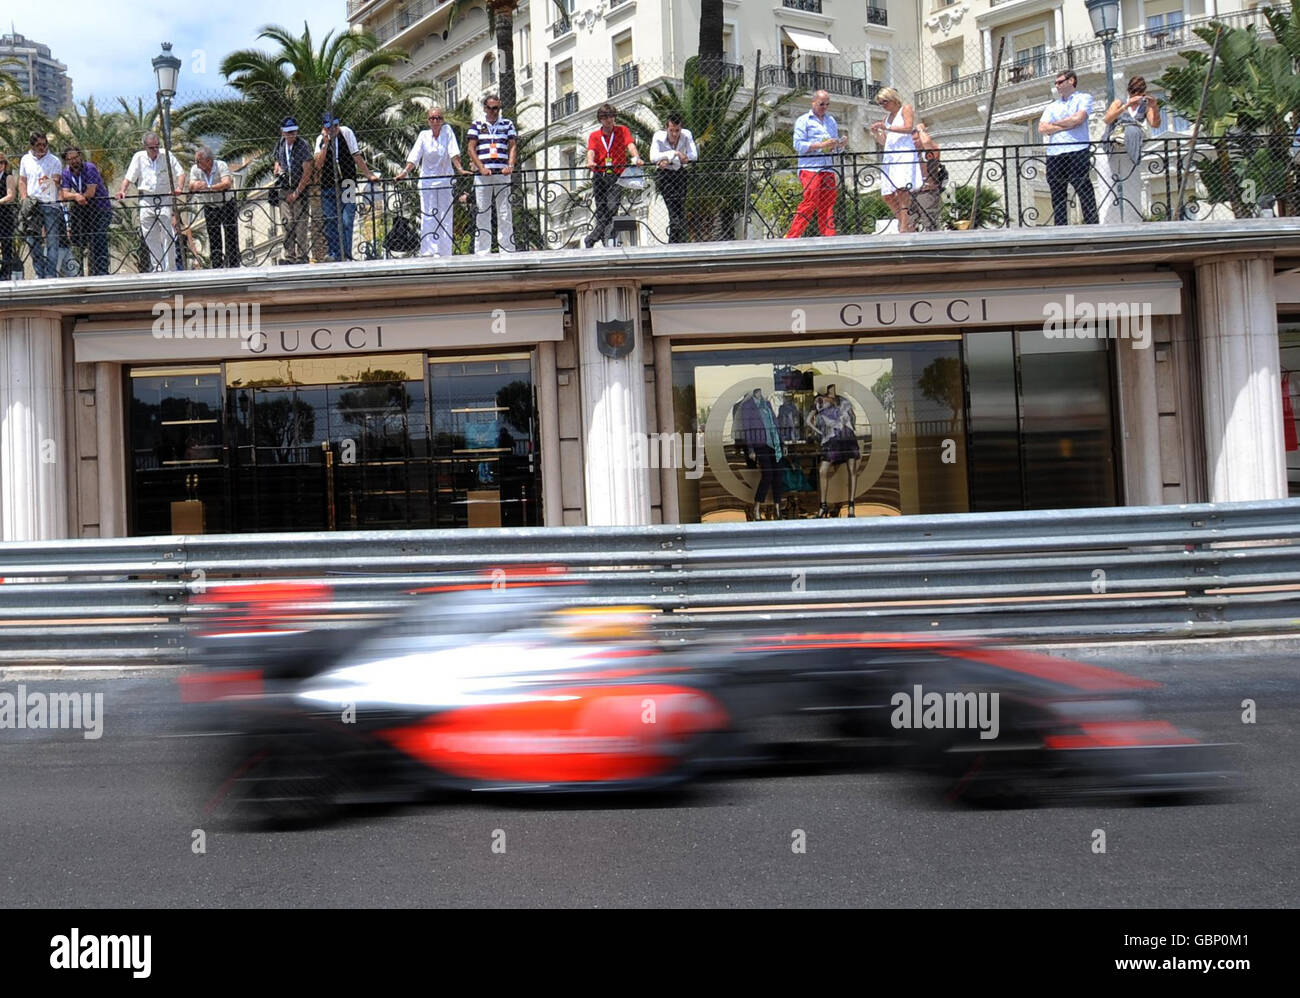 McLaren Mercedes' Lewis Hamilton passa al Gucci Shop durante una sessione di prove libere al Circuit de Monaco, Monte Carlo, Monaco. Foto Stock